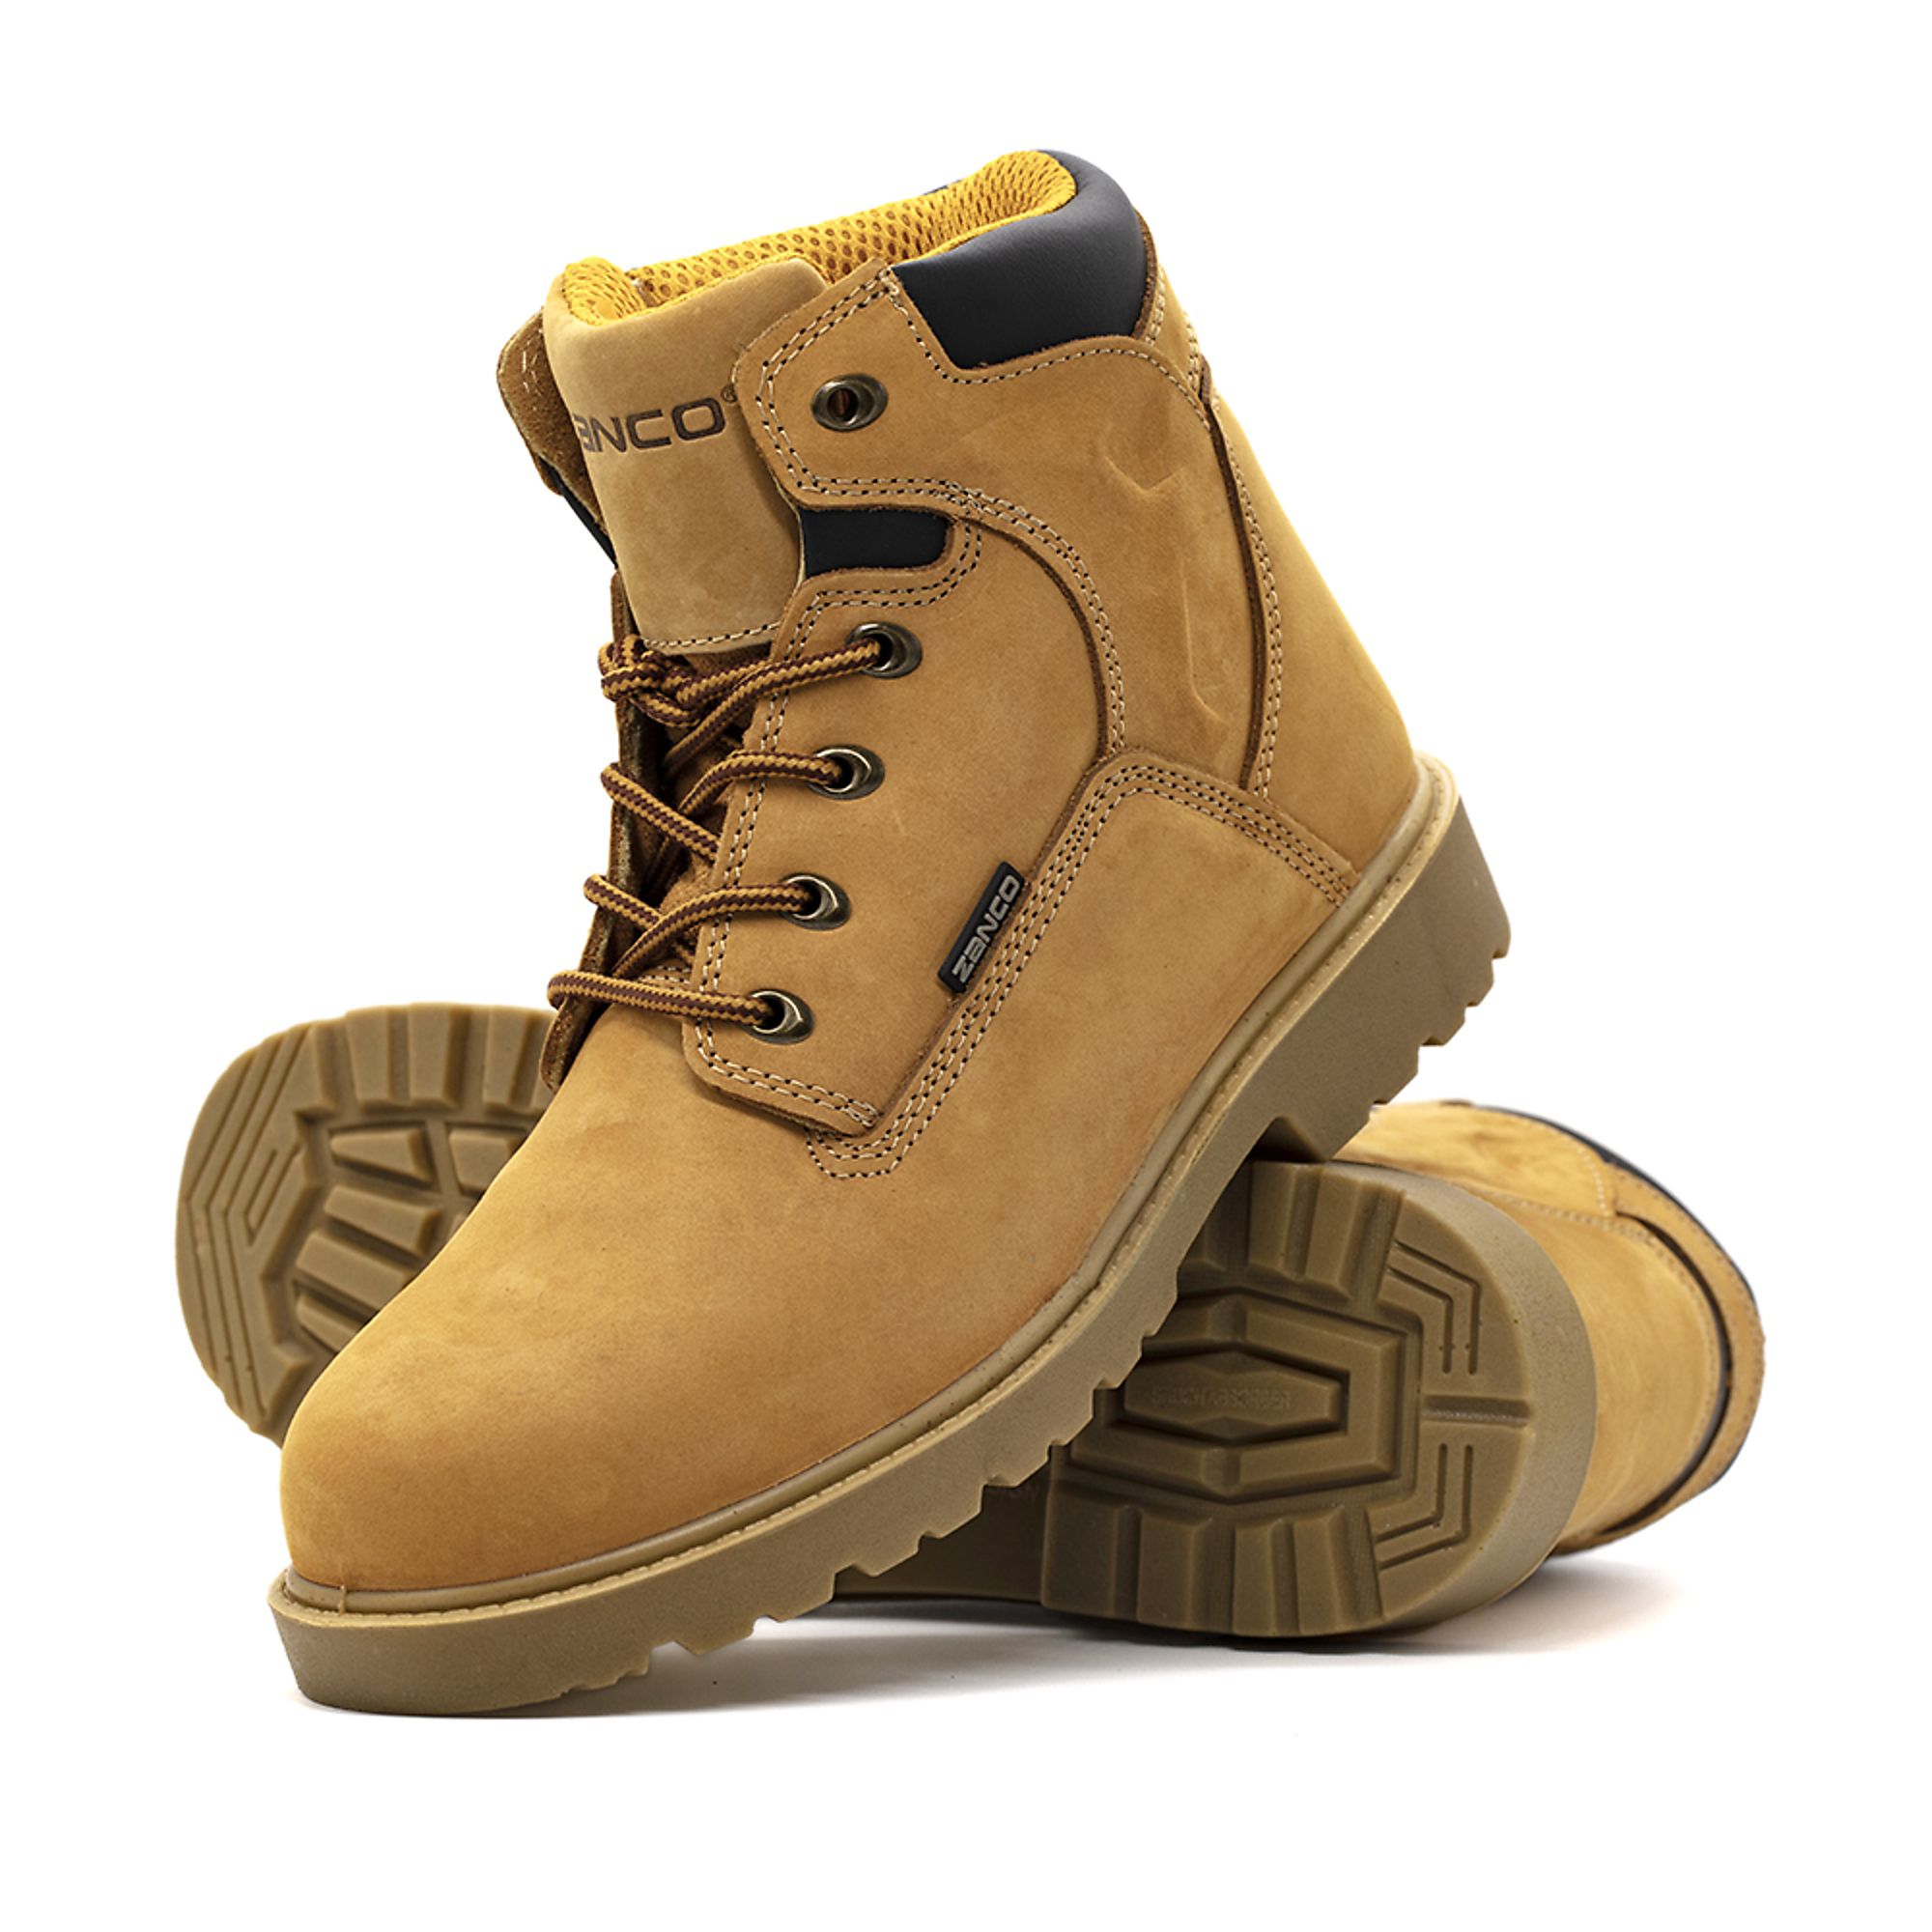 Zanco, Men's Waterproof,Steel toe,EH,Safety boots, Size 8, Width Medium, Color WHEAT, Model 7681-SE-8